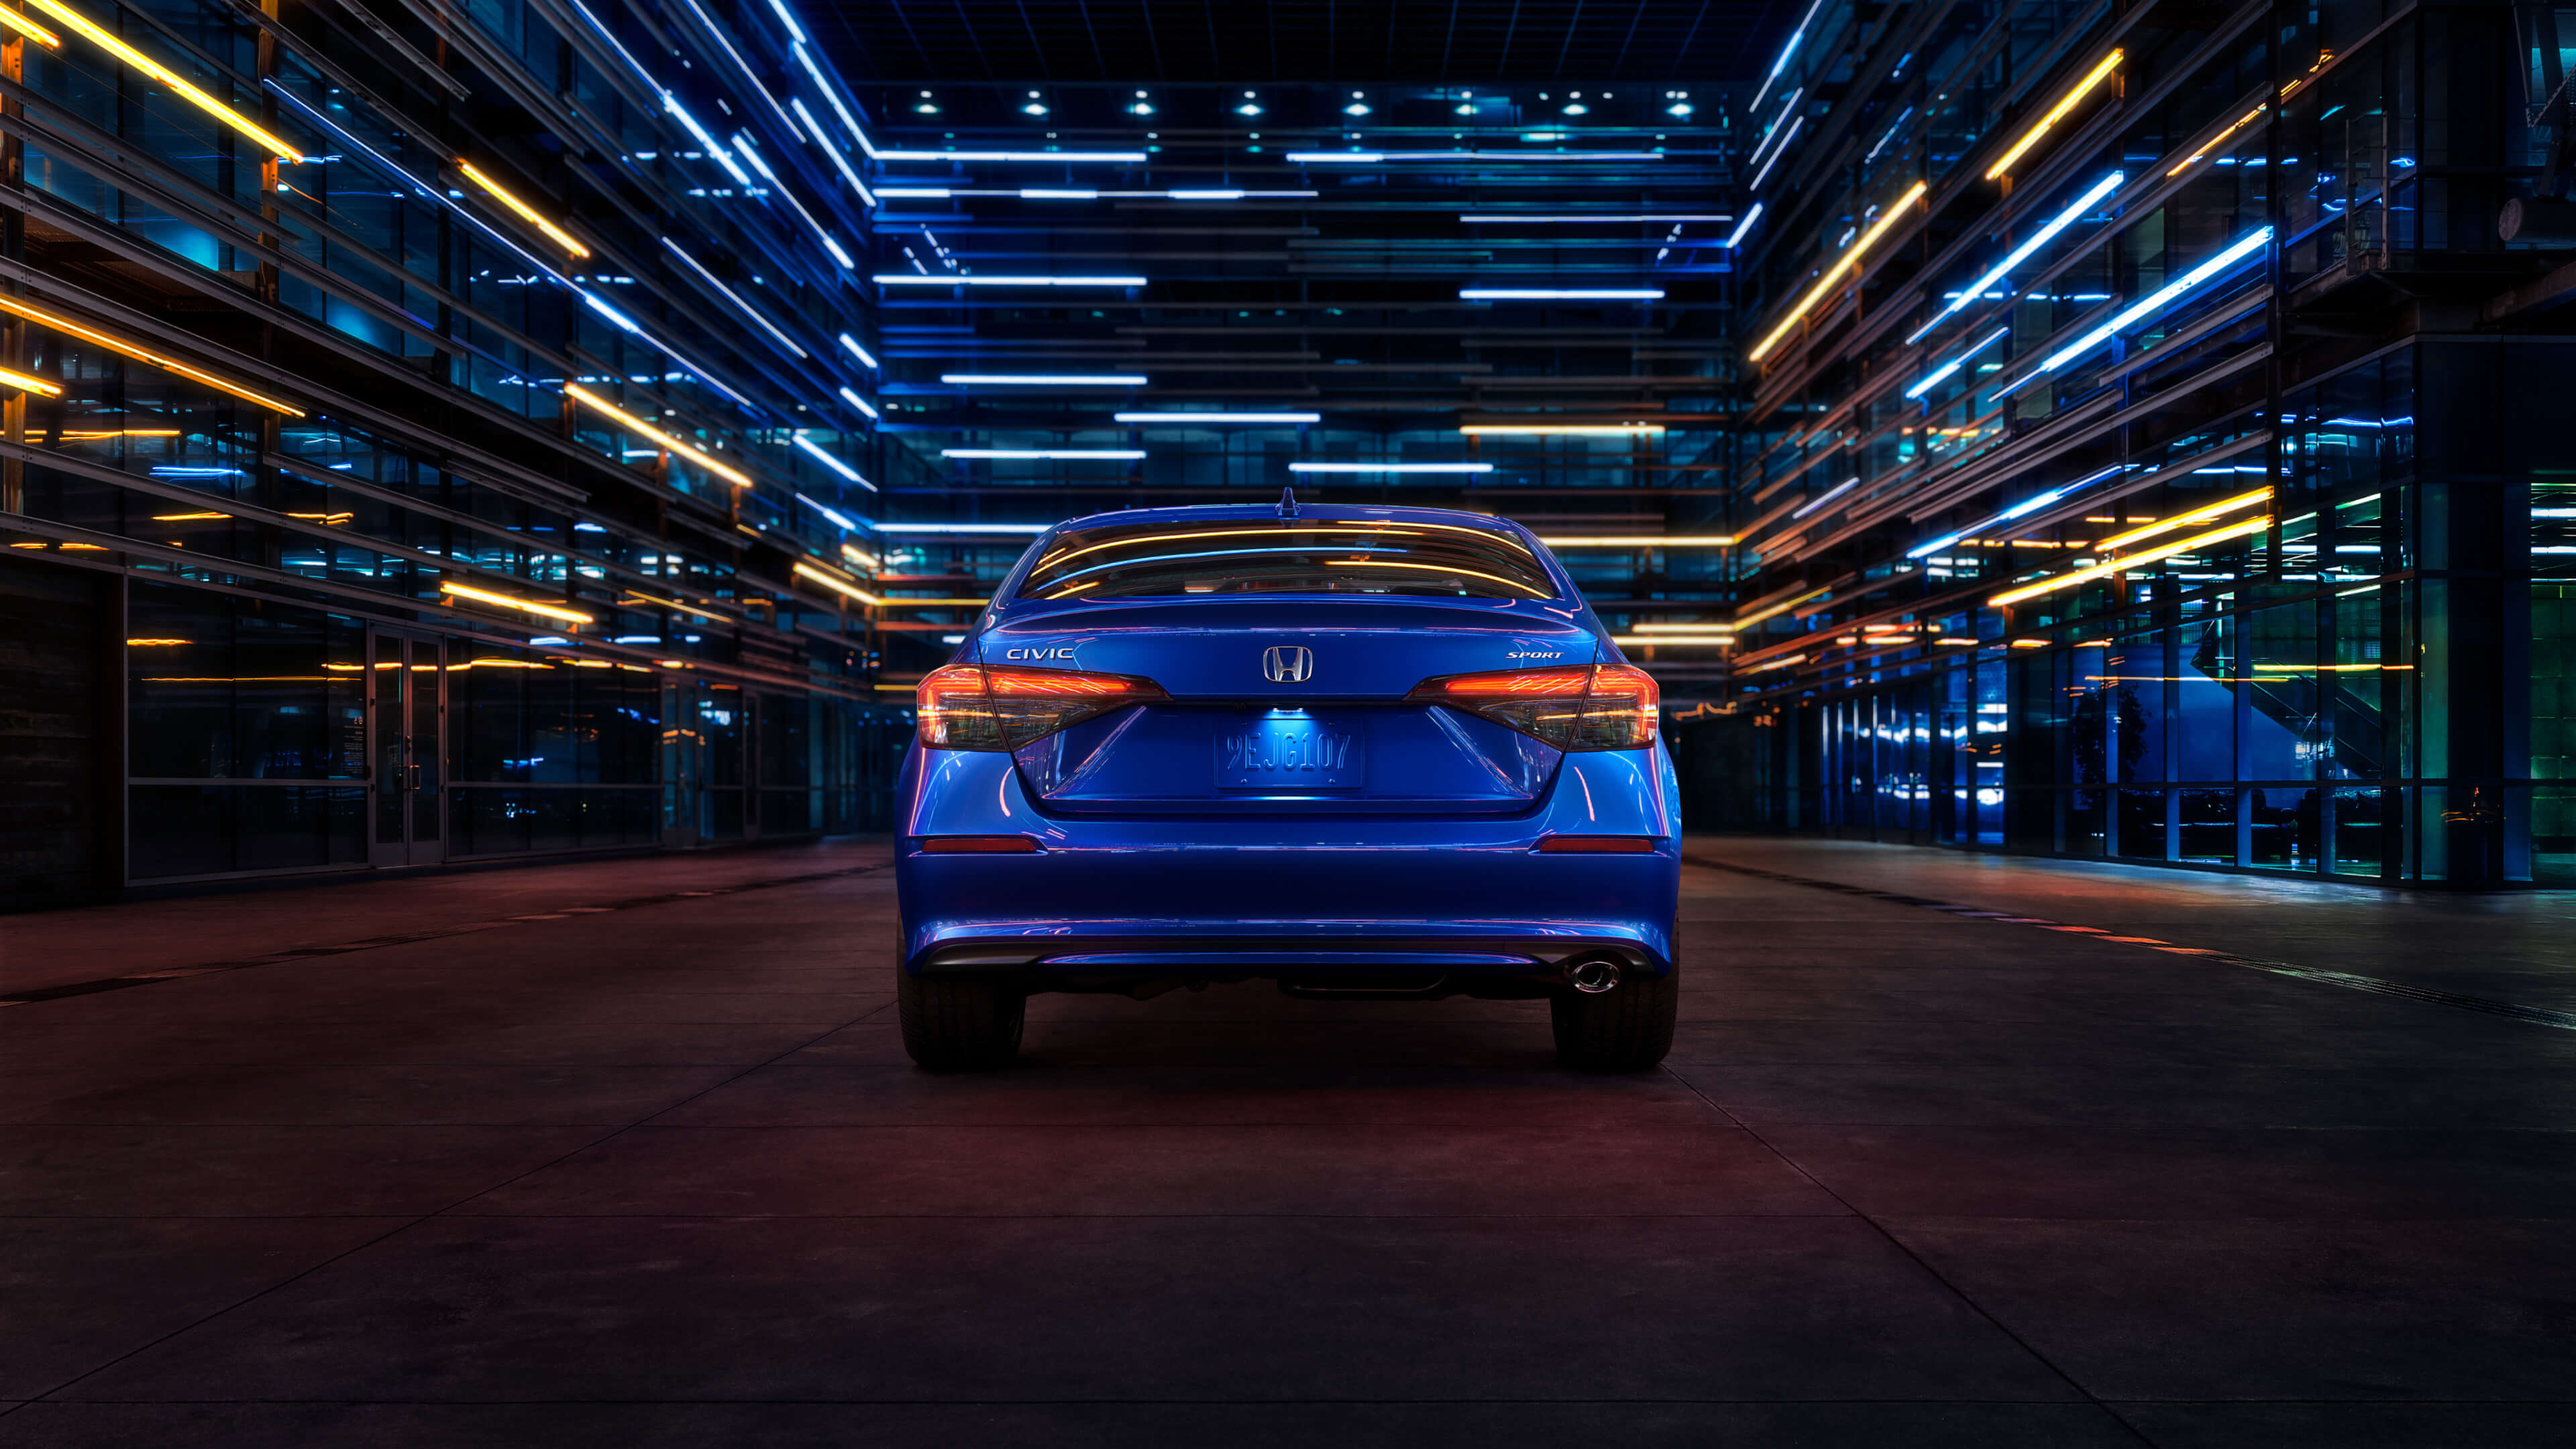 Vue arrière d’une Honda Civic 2022 bleue circulant de nuit dans une rue urbaine éclairée par des lumières bleues et blanches provenant des bâtiments environnants.